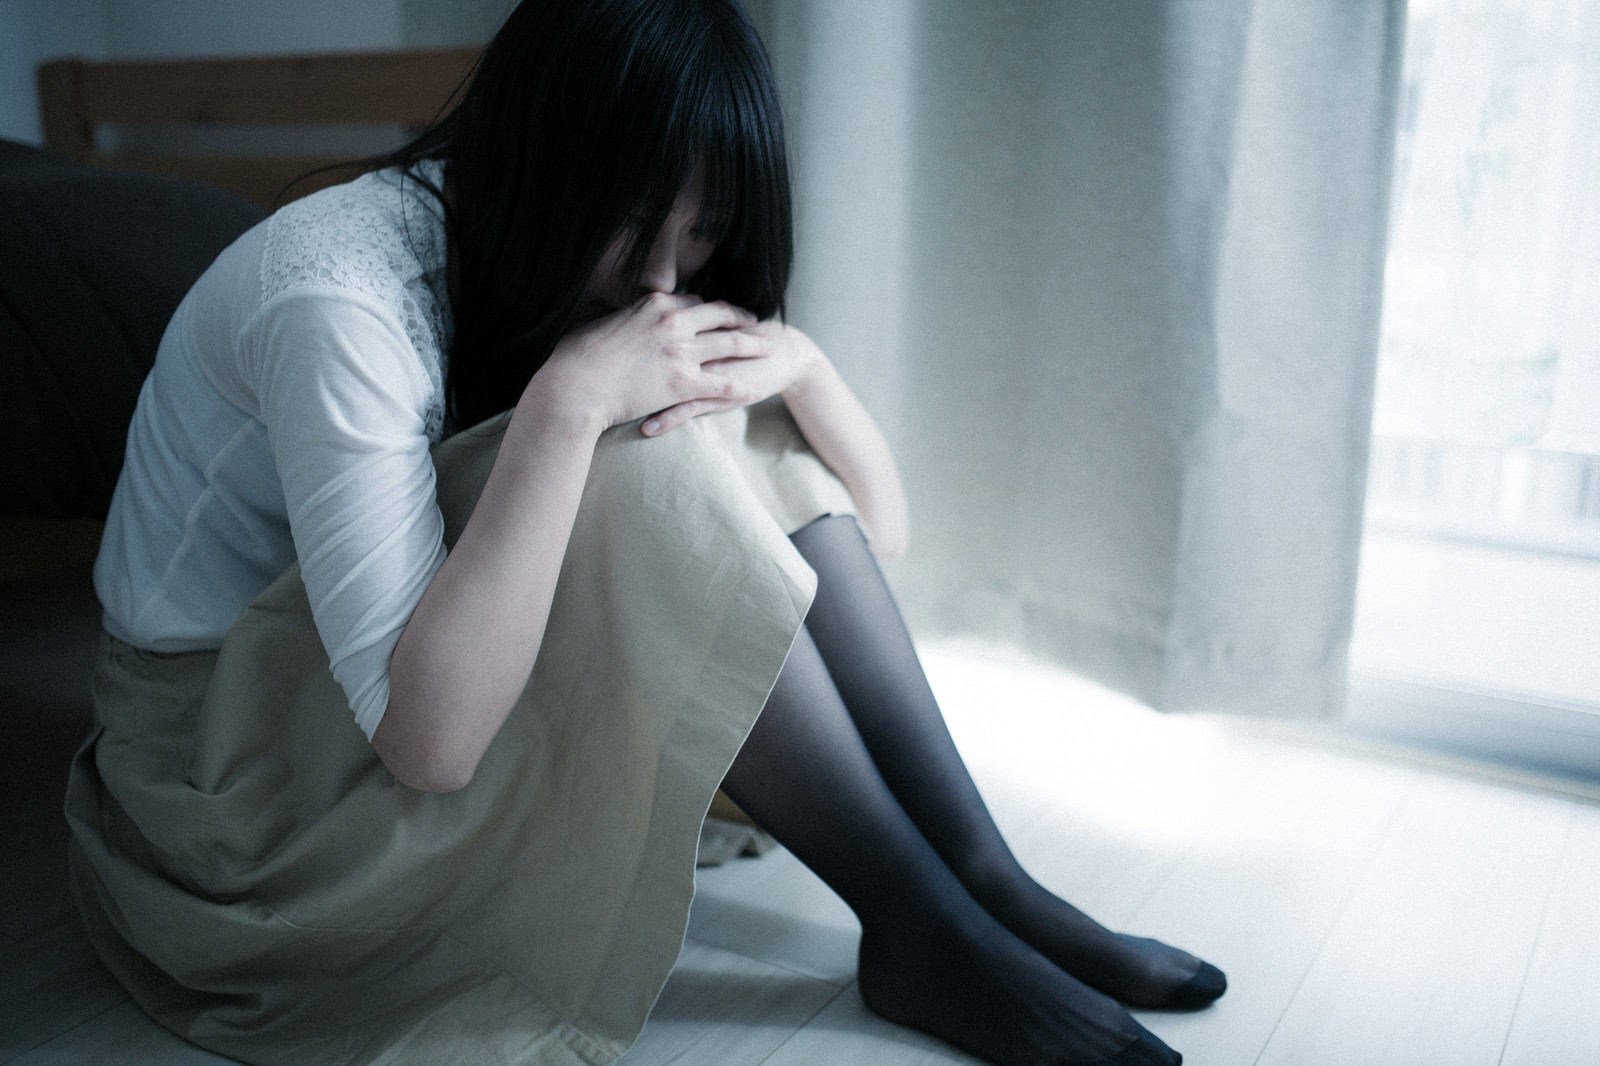 Foram registrados 1805 suicídios em setembro no Japão